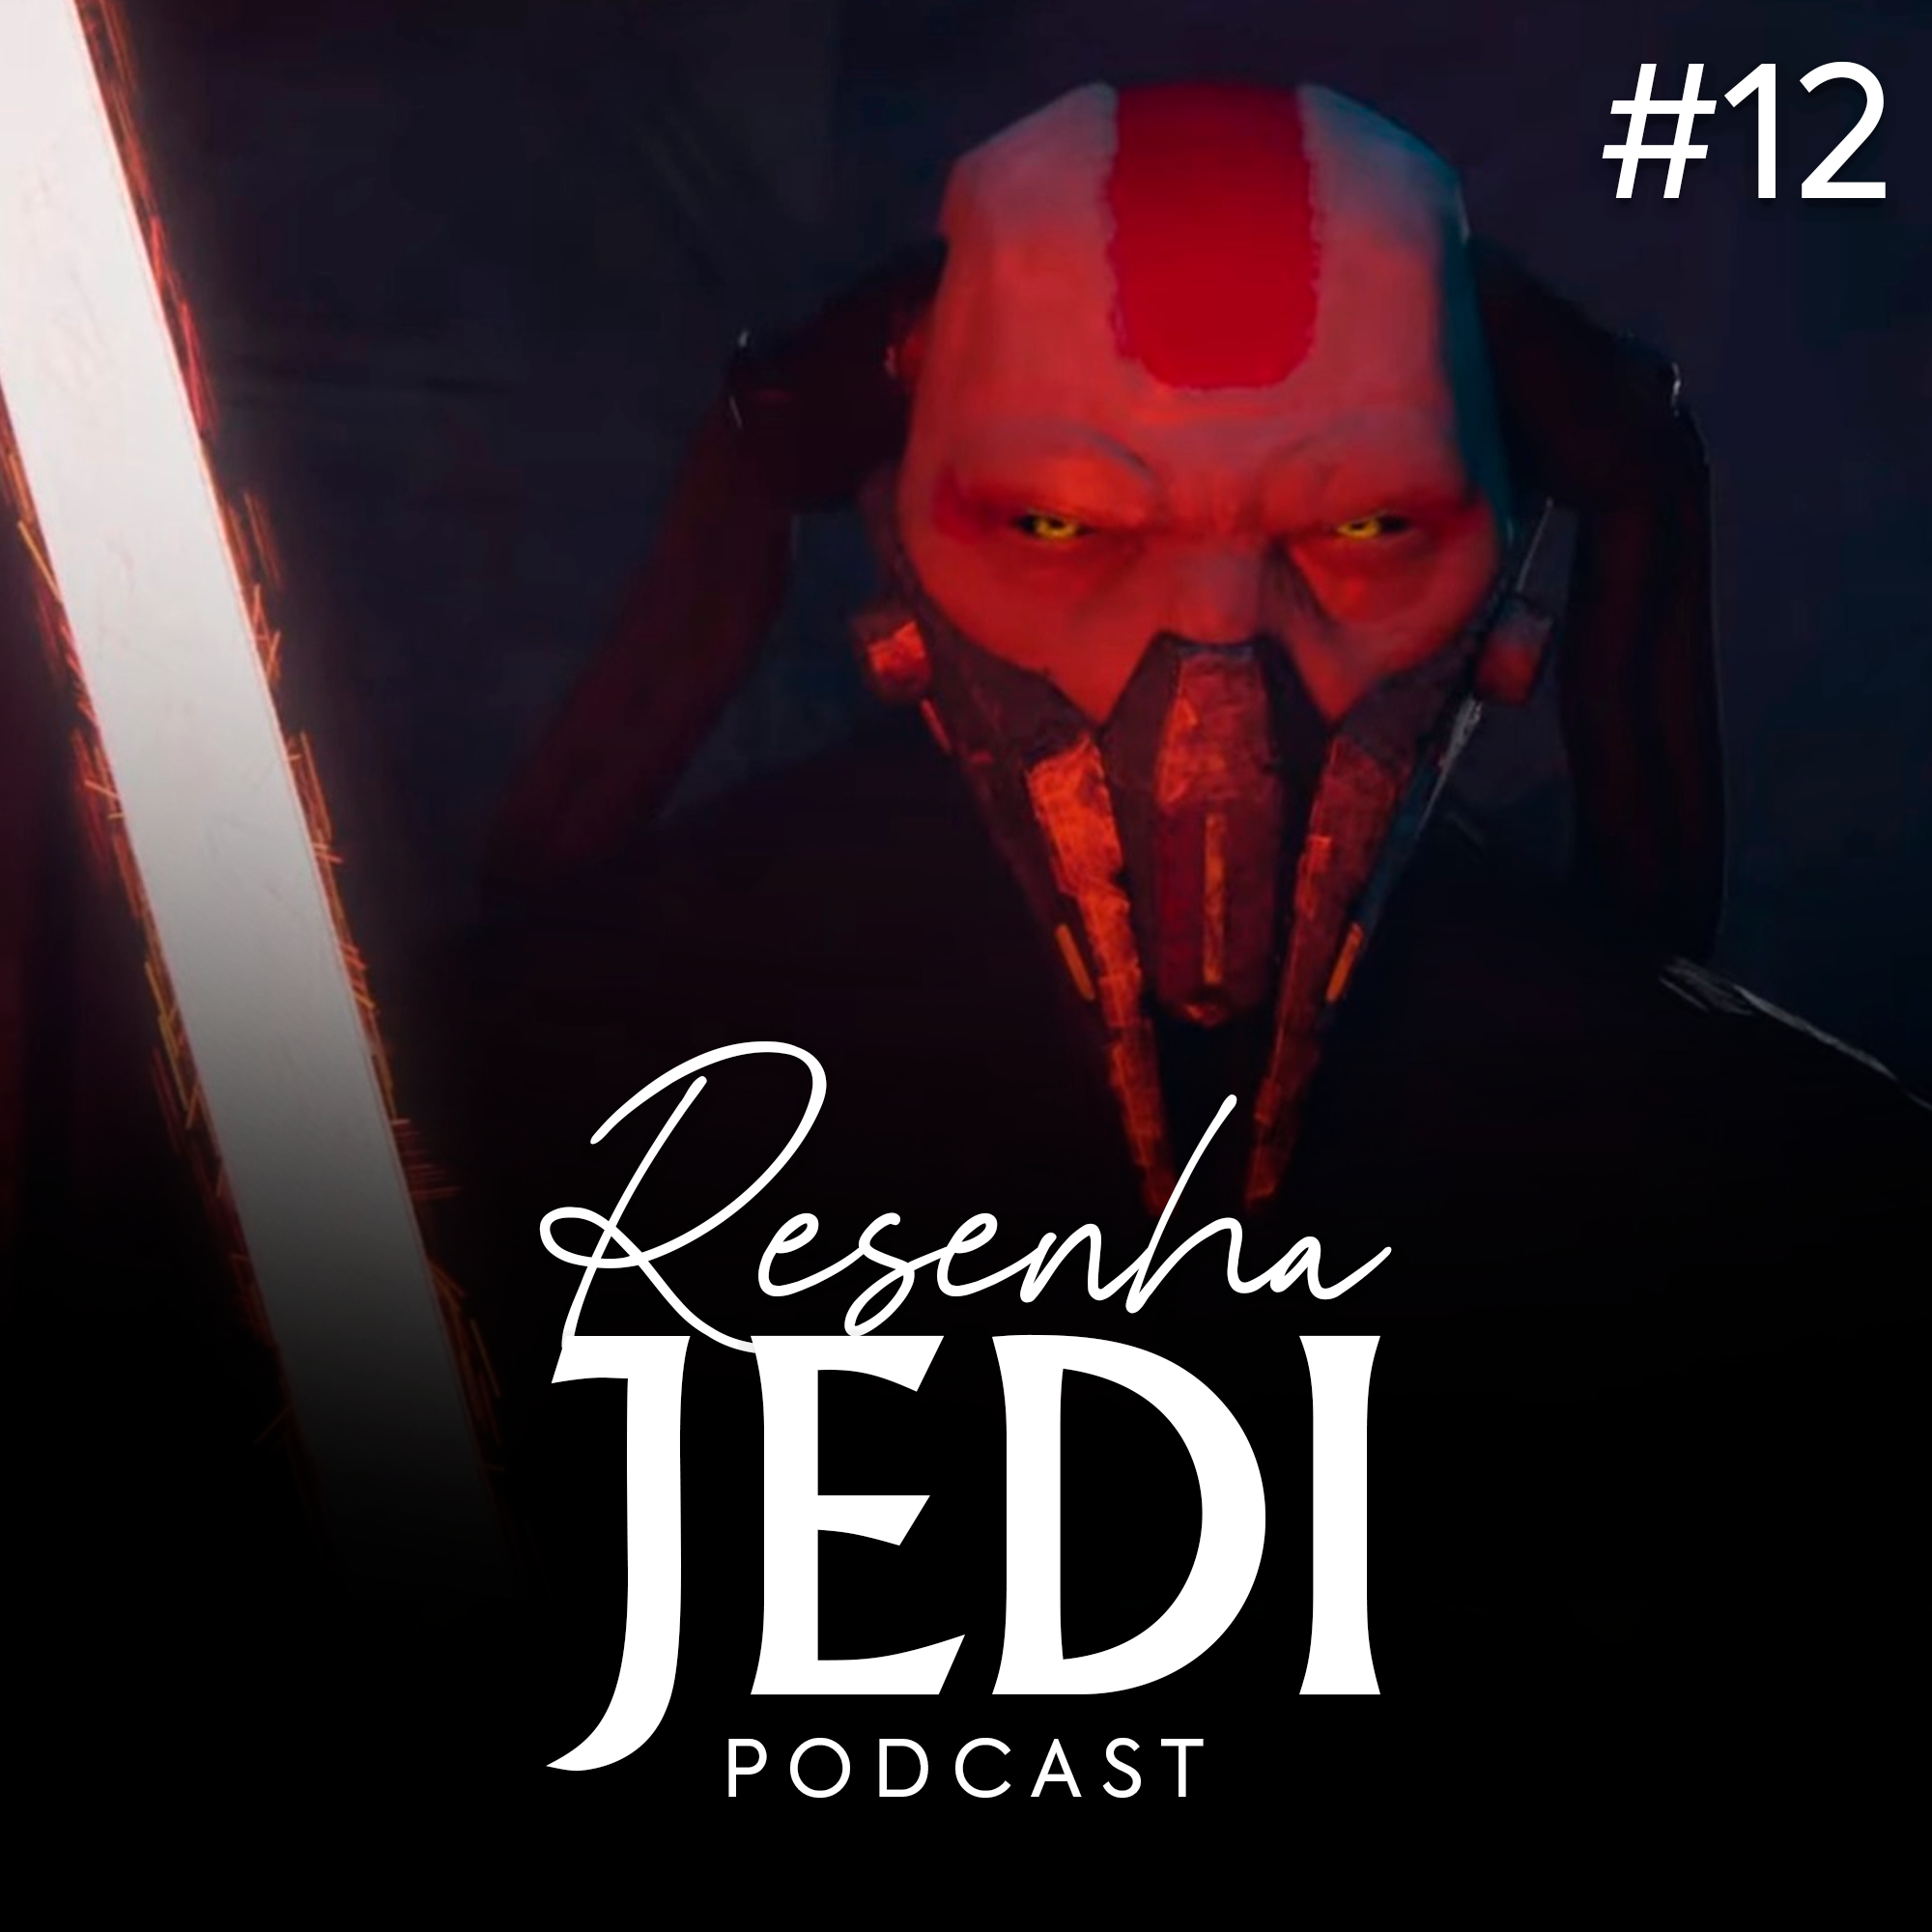 Resenha Jedi #12 – Visions: Análise da 2ª temporada